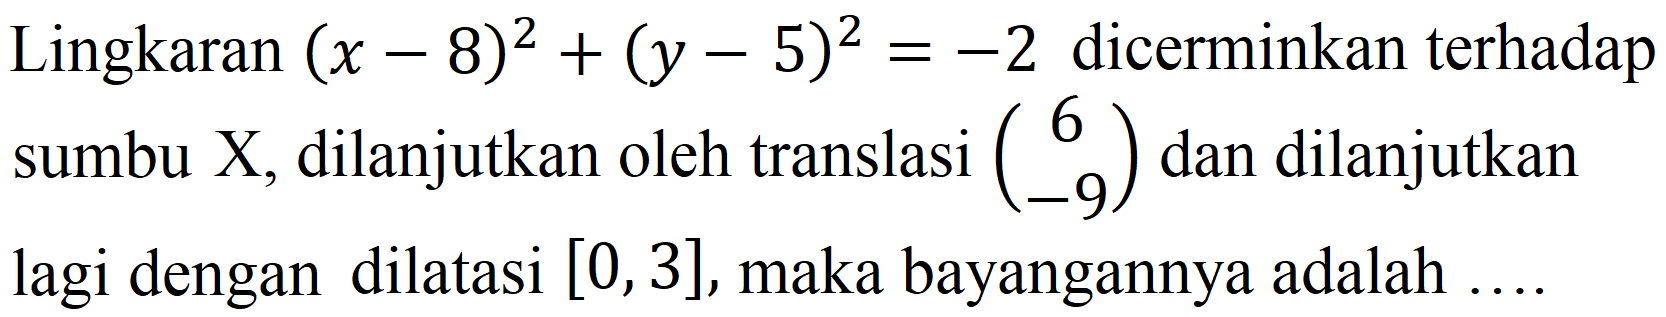 Lingkaran  (x-8)^(2)+(y-5)^(2)=-2  dicerminkan terhadap sumbu X, dilanjutkan oleh translasi  (6  -9)  dan dilanjutkan lagi dengan dilatasi  [0,3] , maka bayangannya adalah ....